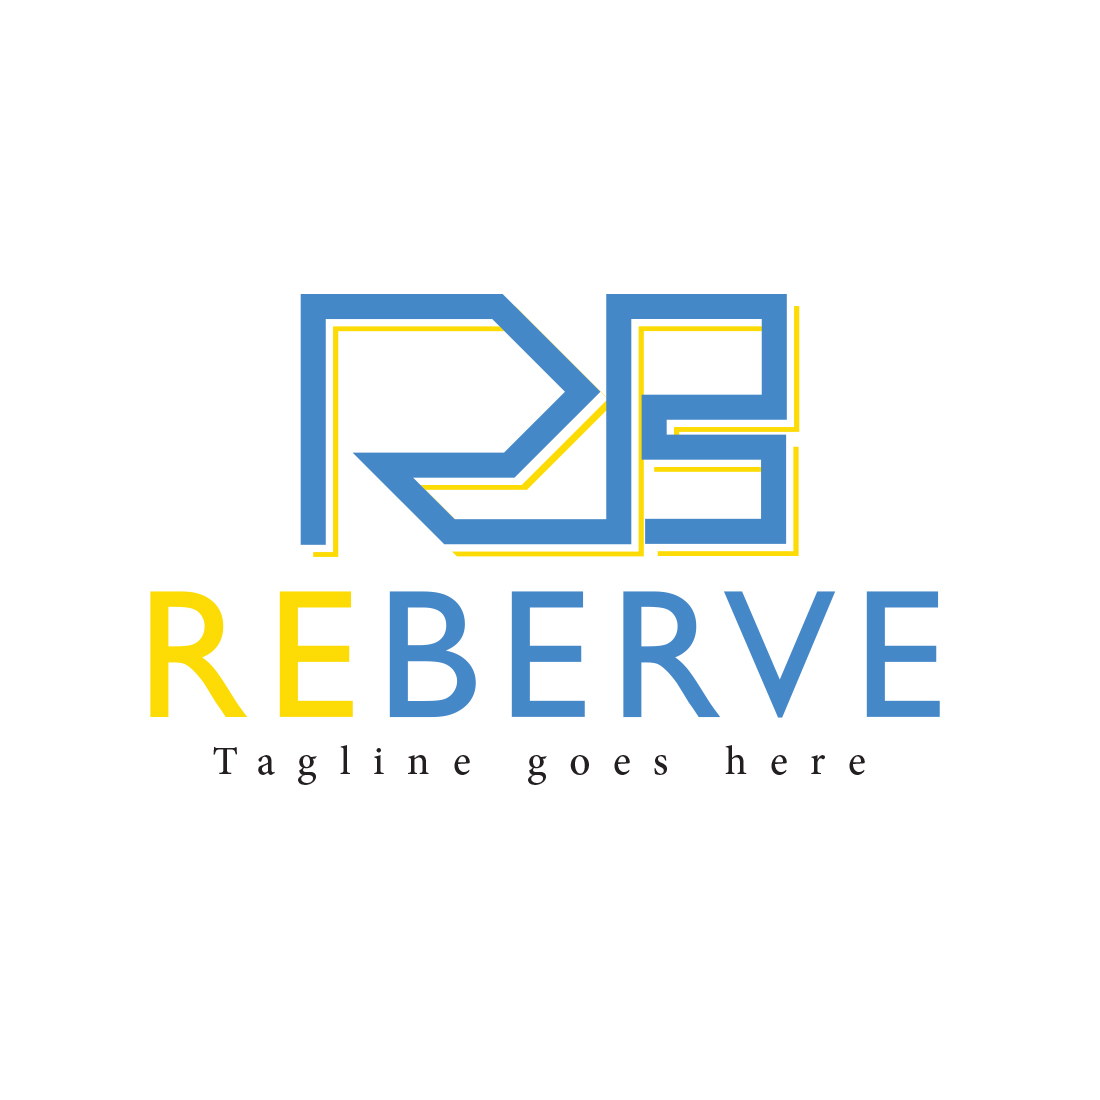 Wordmark ( RB ) logo design cover image.